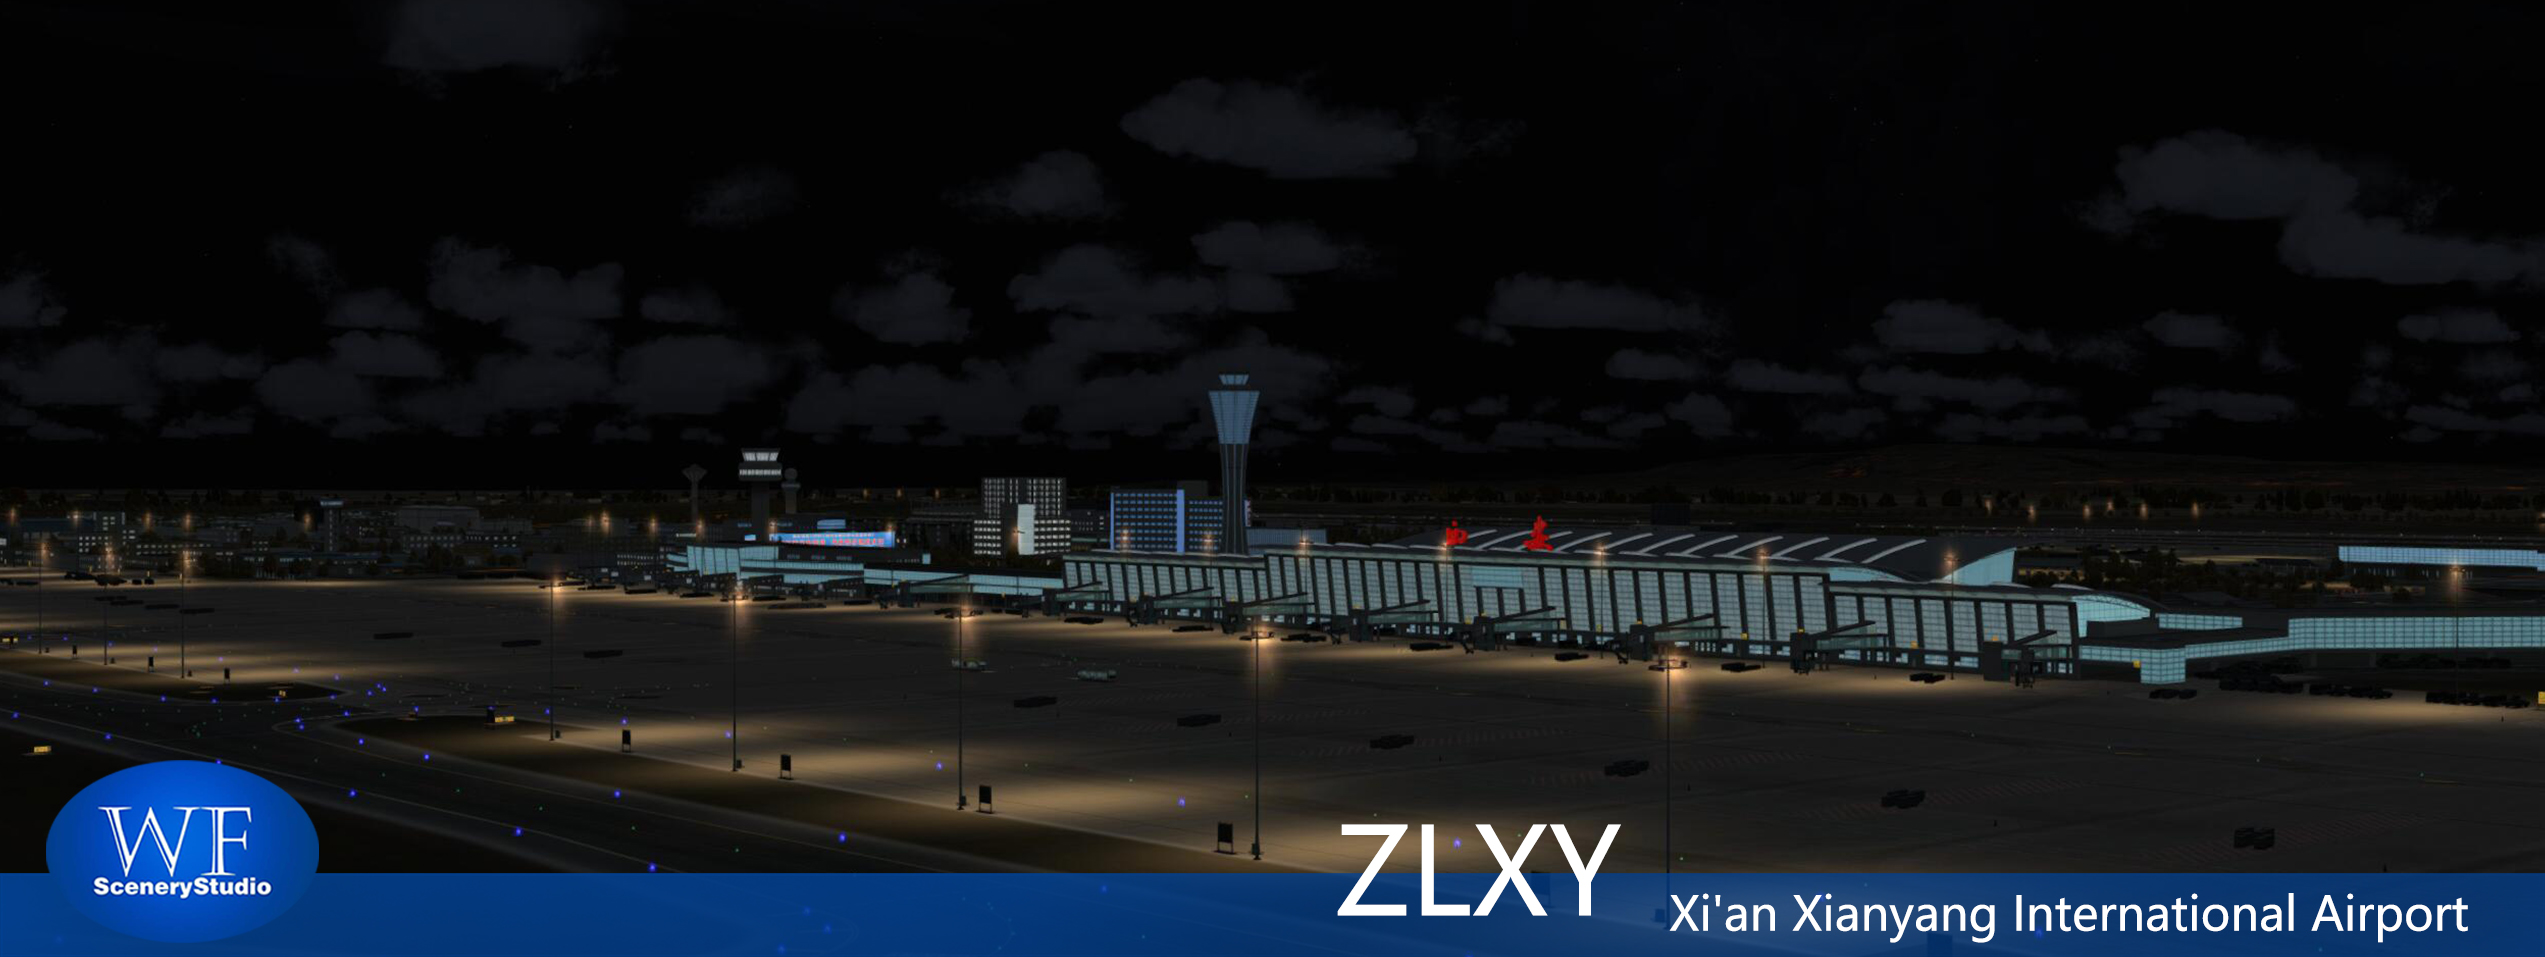 西安咸阳国际机场FSX和P3DV3 版本发布-1733 